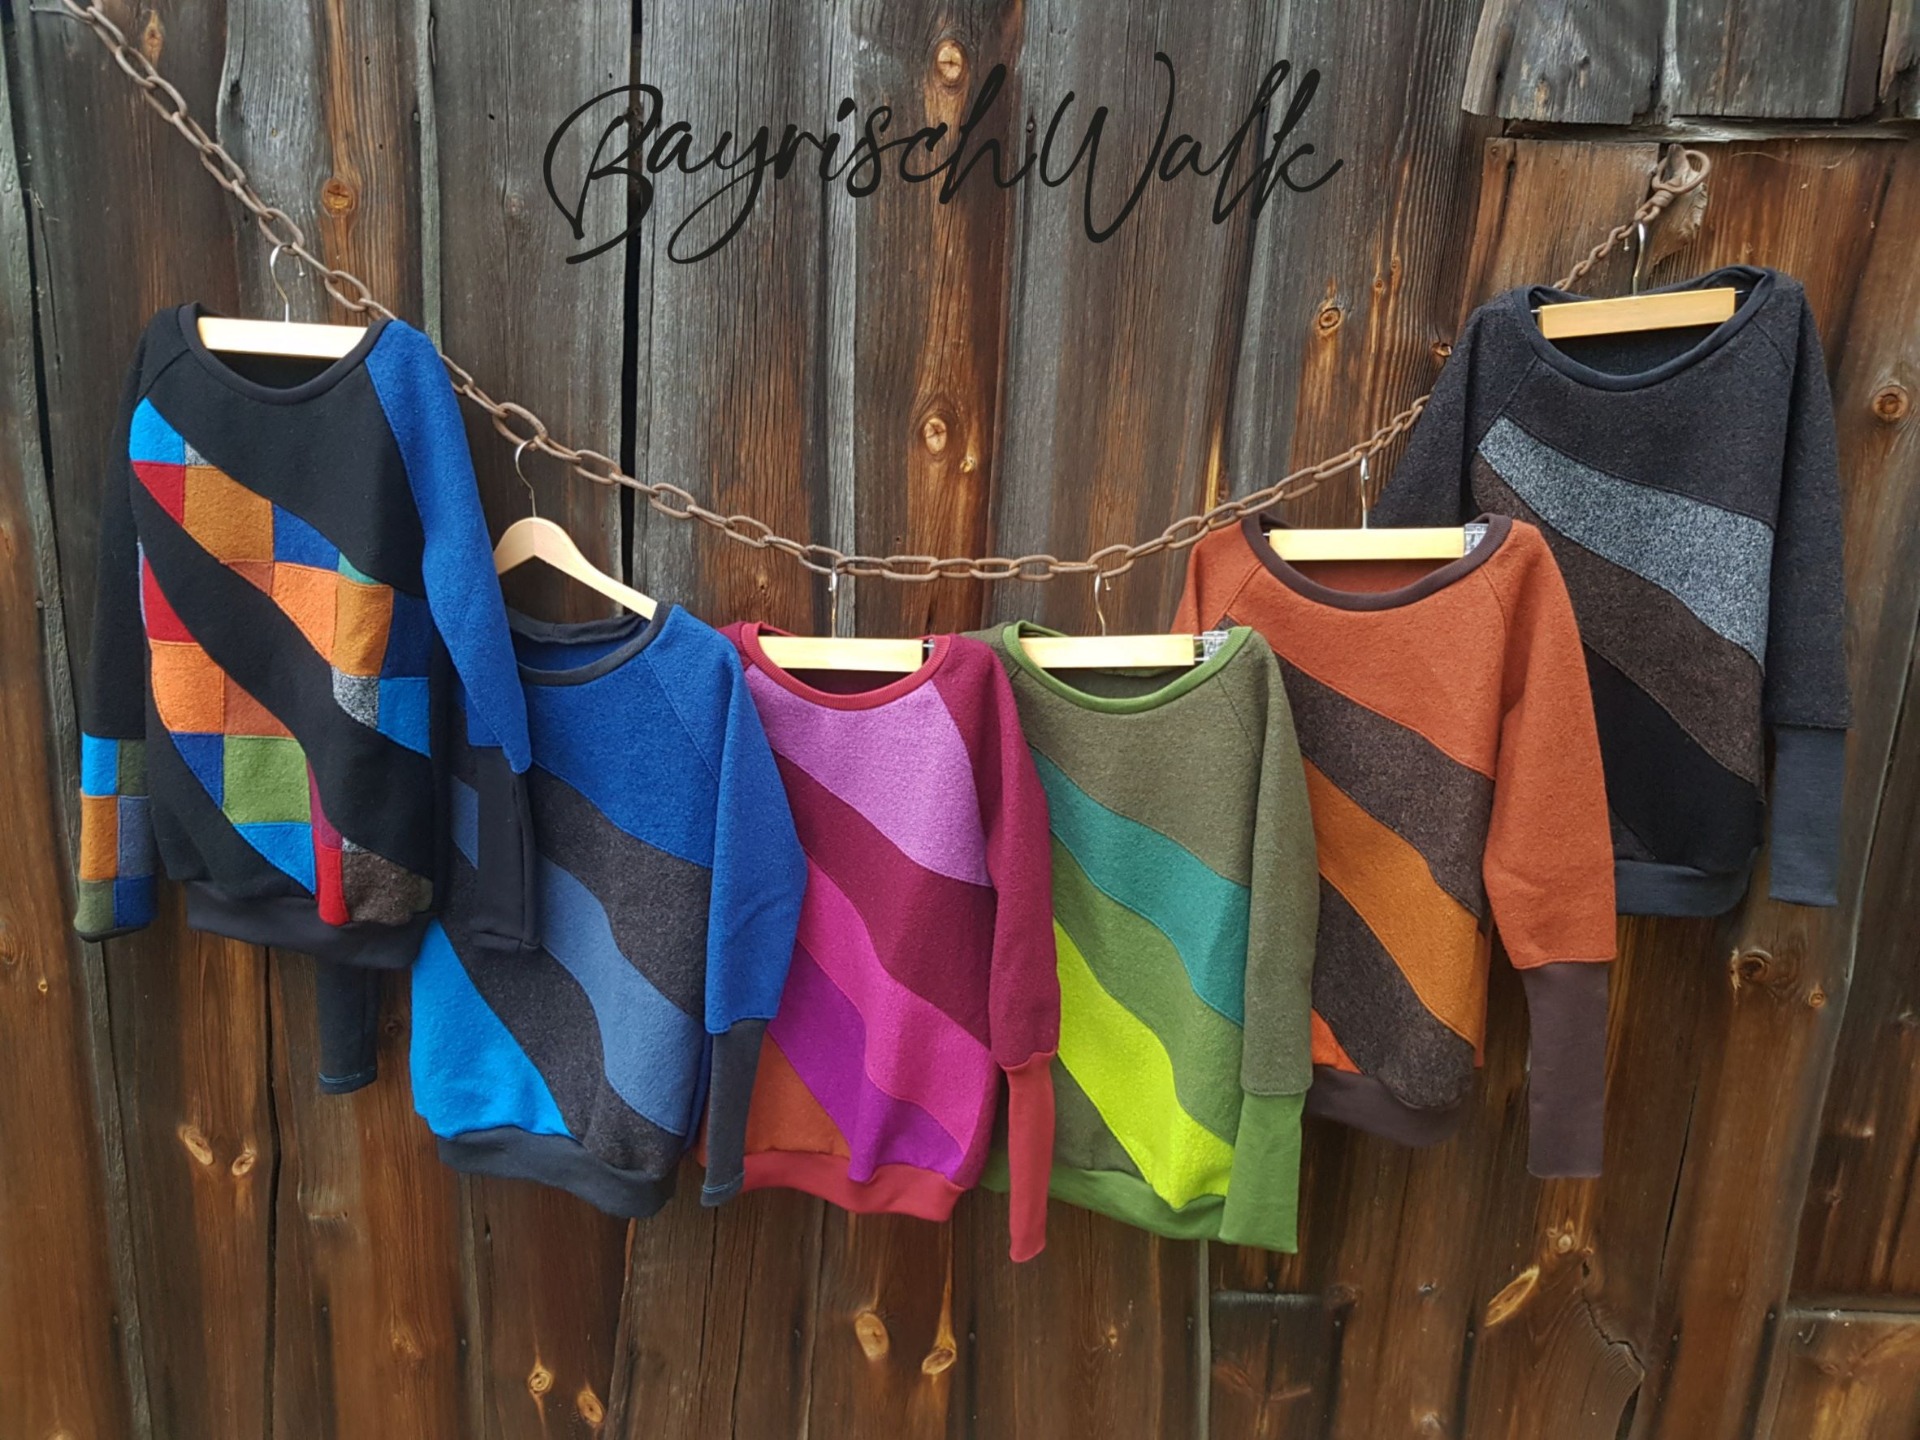 Bayrisch Walk- Handmade Kleidung für Männer, Frauen und Kinder aus Walk,  Wolle-Seide und Leinen